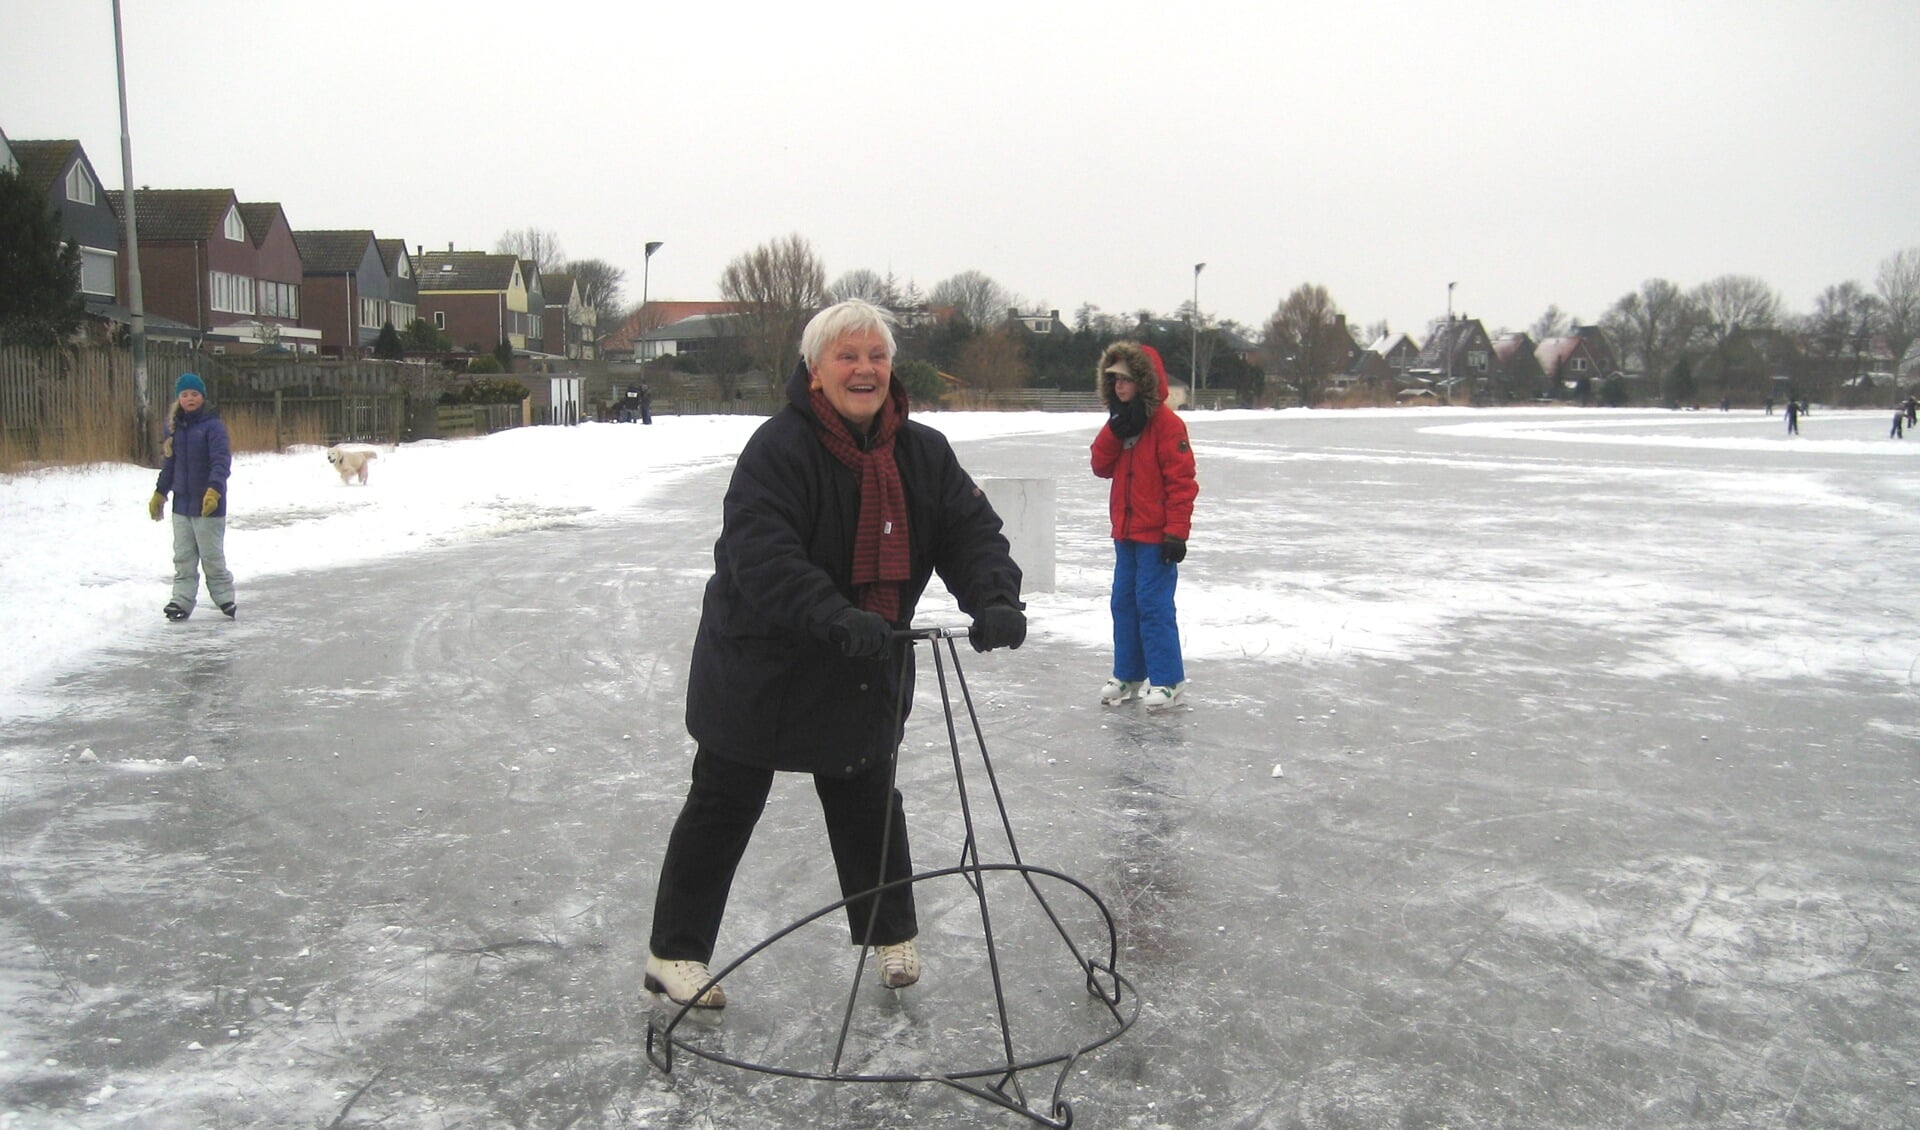 Lasbedrijf Joost Overmaat bedacht en vervaardigde een schaatshulp voor de ijsbaan van Oosterend. 